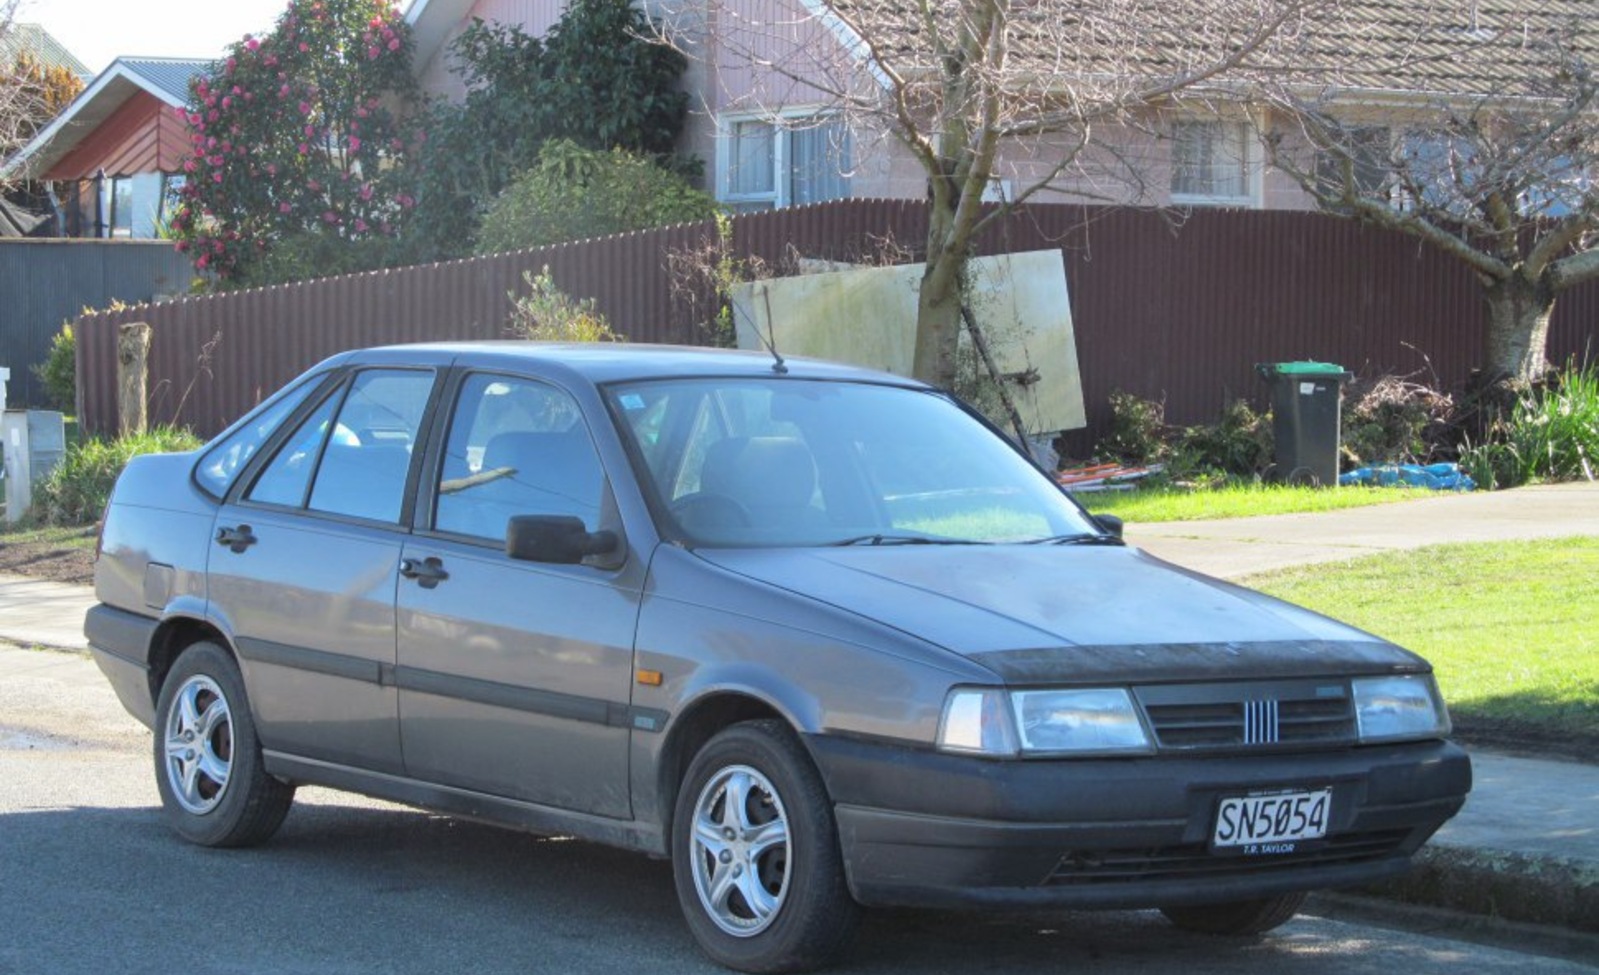 Fiat Tempra (159) 1.4 (78 Hp) 1990, 1991, 1992, 1993 